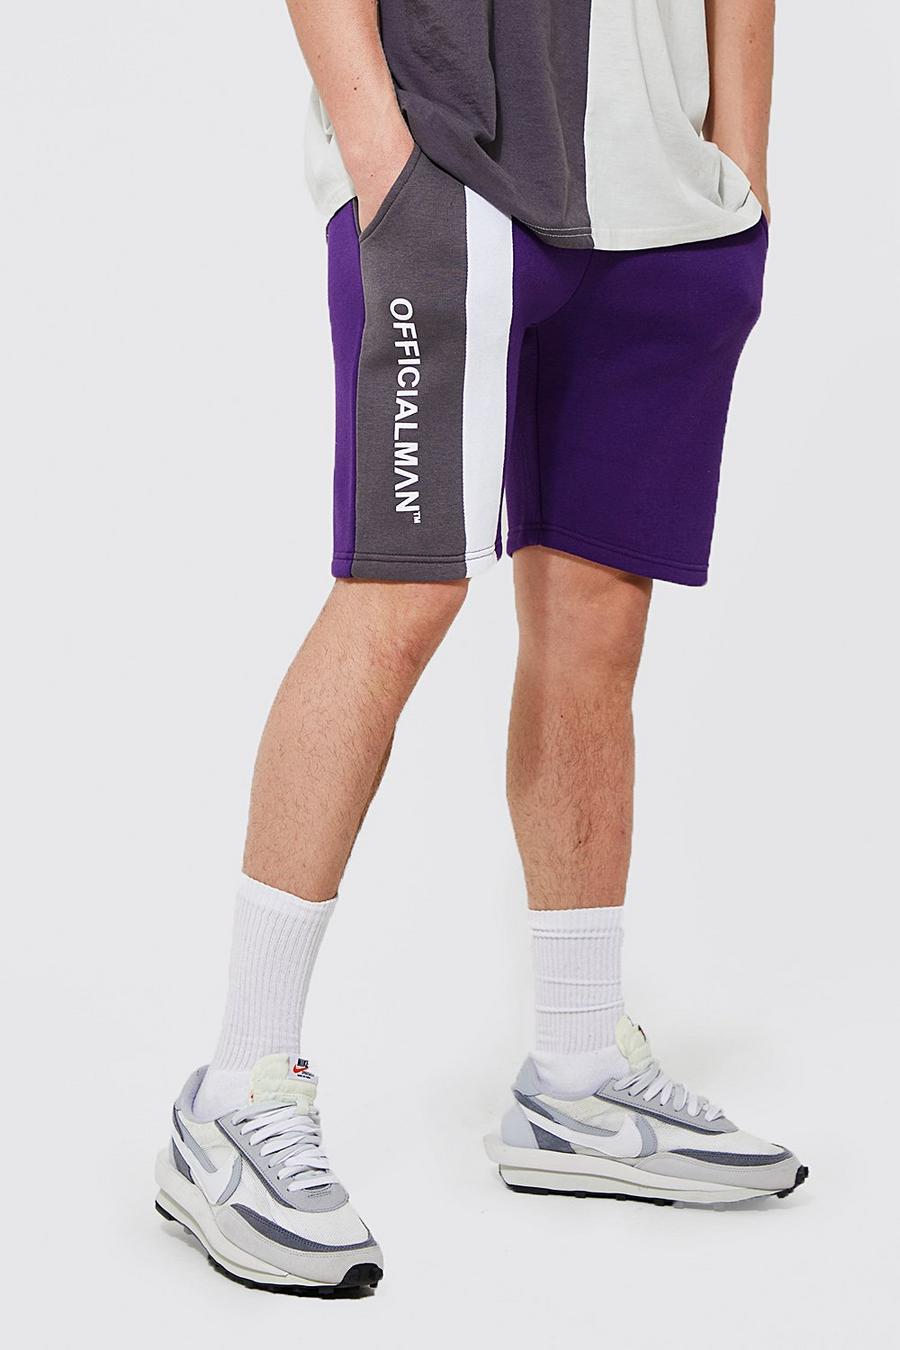 Pantaloncini Official Slim Fit in jersey a blocchi di colore, Purple morado